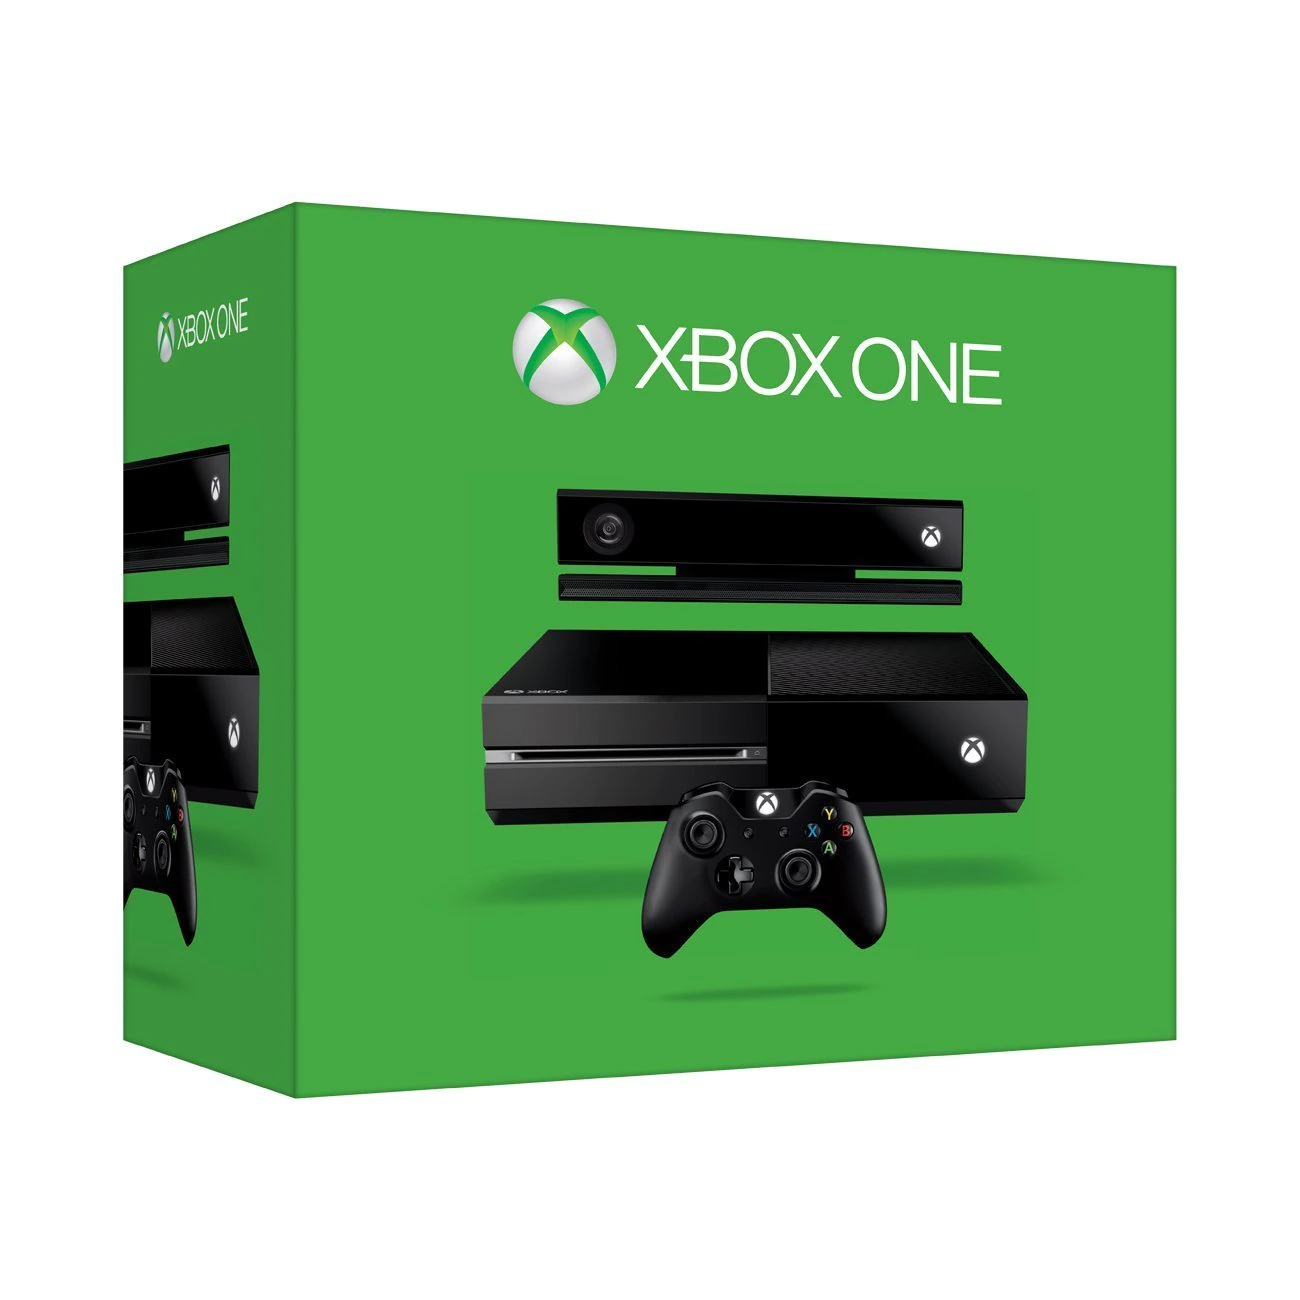 Microsoft XBOX ONE 500GB + Kinect szenzor - Xbox One Gépek